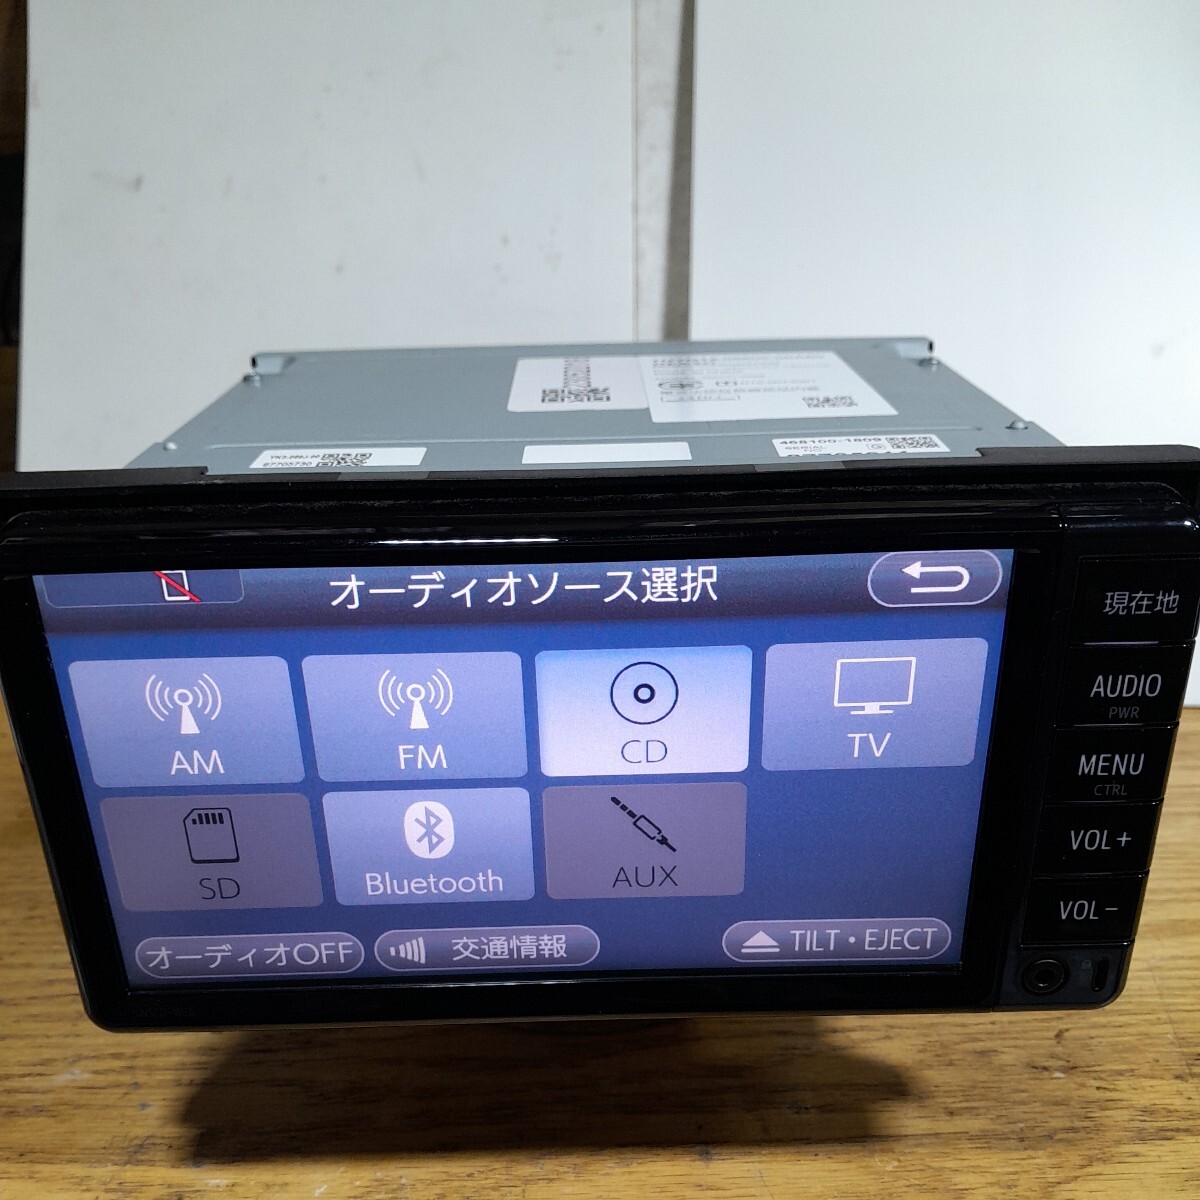  Toyota оригинальная навигация NSCD-W66 2018 год весна версия раз карта данные ( контрольный номер :23052018)